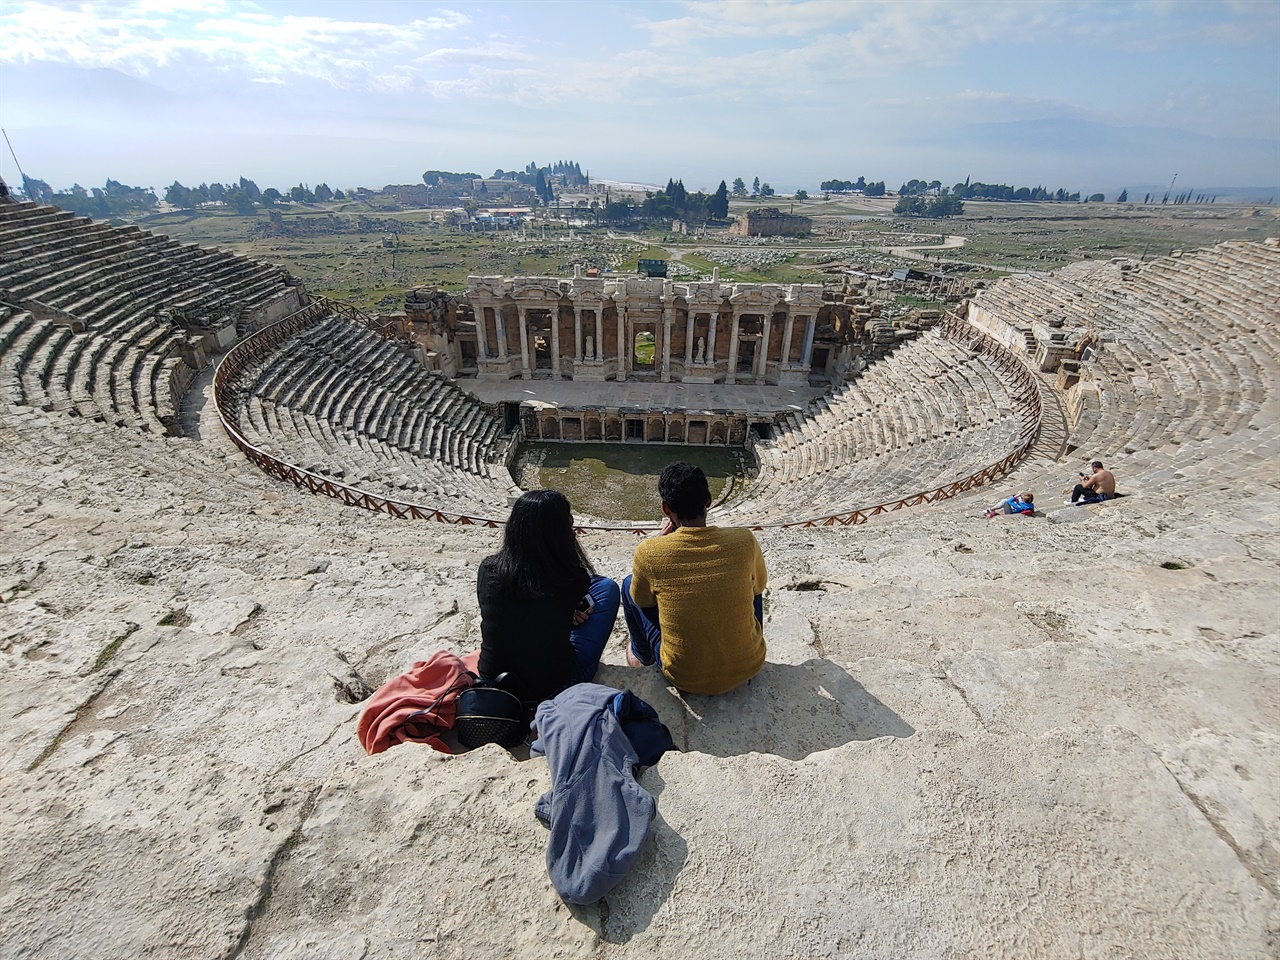  히에라 폴리스 원형극장. 2세기 하드리아누스 황제 때 건설했다. 관객석은 언덕을 이용했다. 배수로가 없는 것으로 미루어 실내 극장이었을 거라고 추정한다.